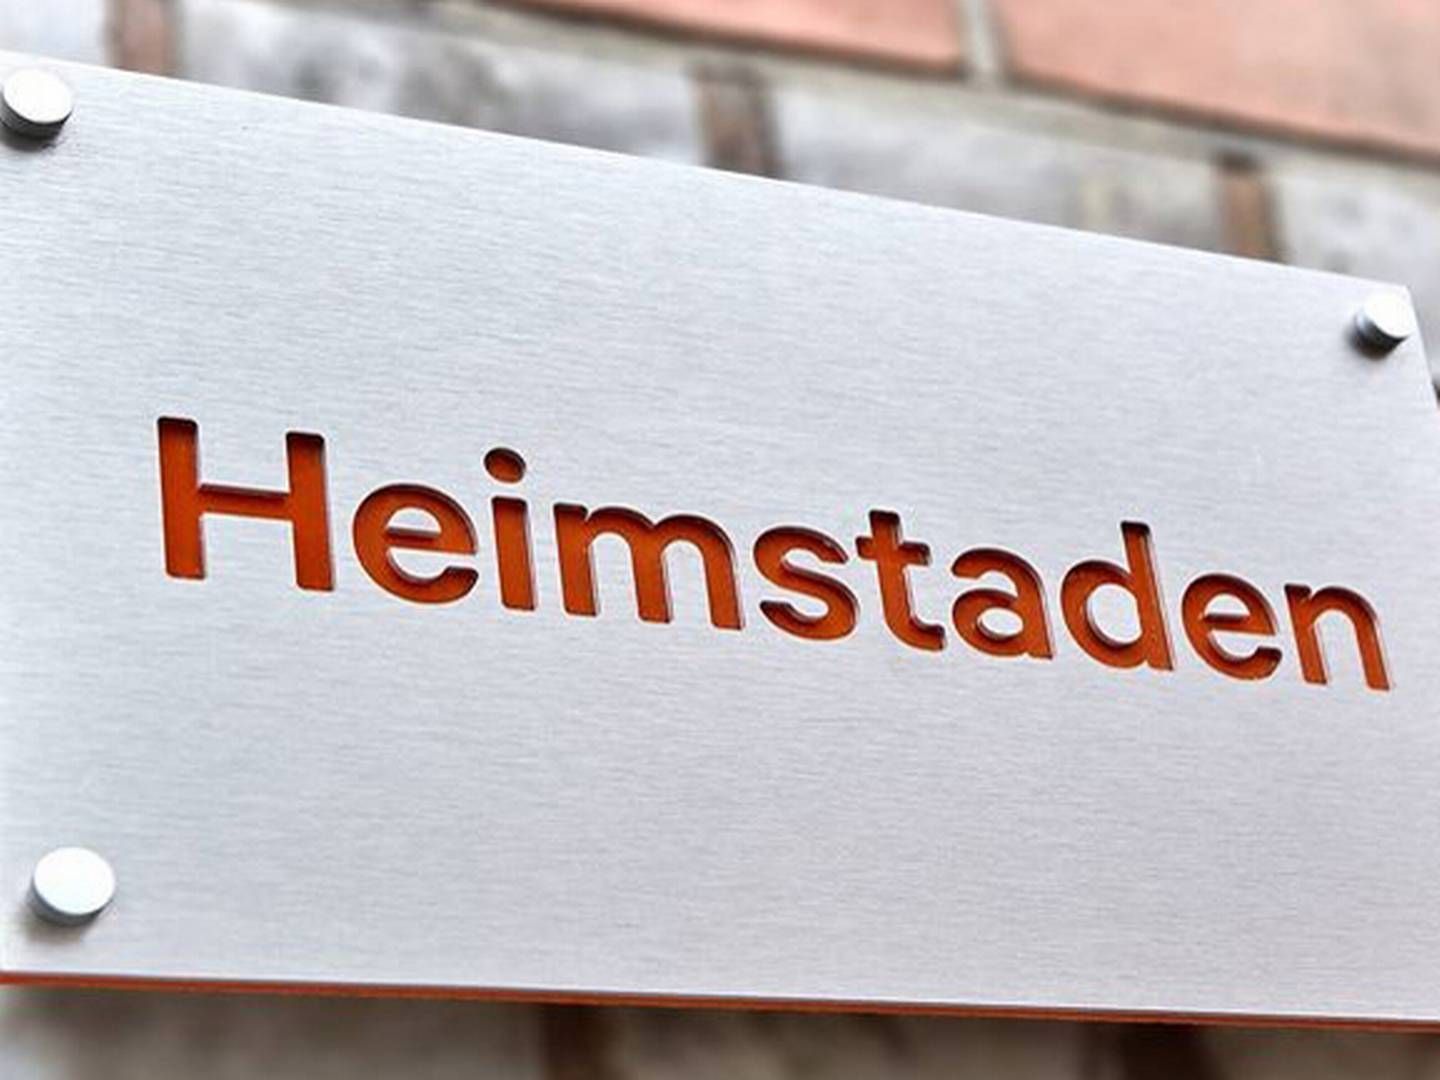 Hos Heimstaden, som den norske velhaver Ivar Tollefsen kontrollerer, er der intet som tyder på, at personer er involveret i sag om bestikkelse, sagde bestyrelsesformand Helge Leiro Baastad i sidste måned. | Foto: PR / Heimstaden